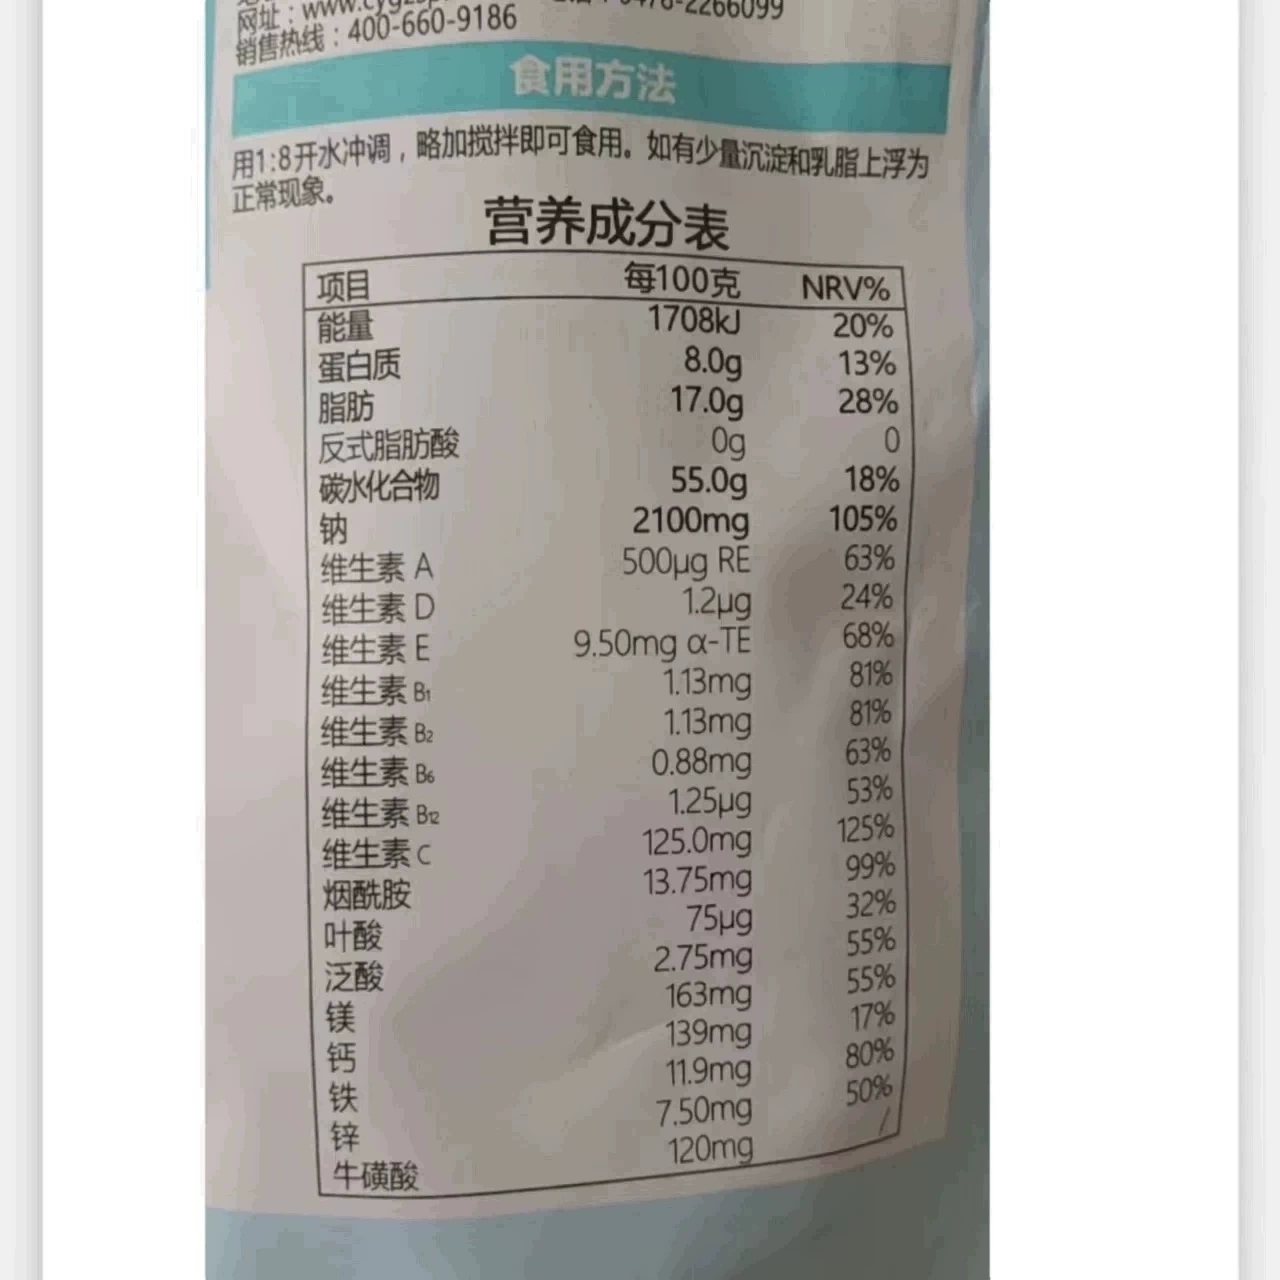 草原贵族奶茶400g咸味甜味15种营养元素内蒙古特产食用方法见包装